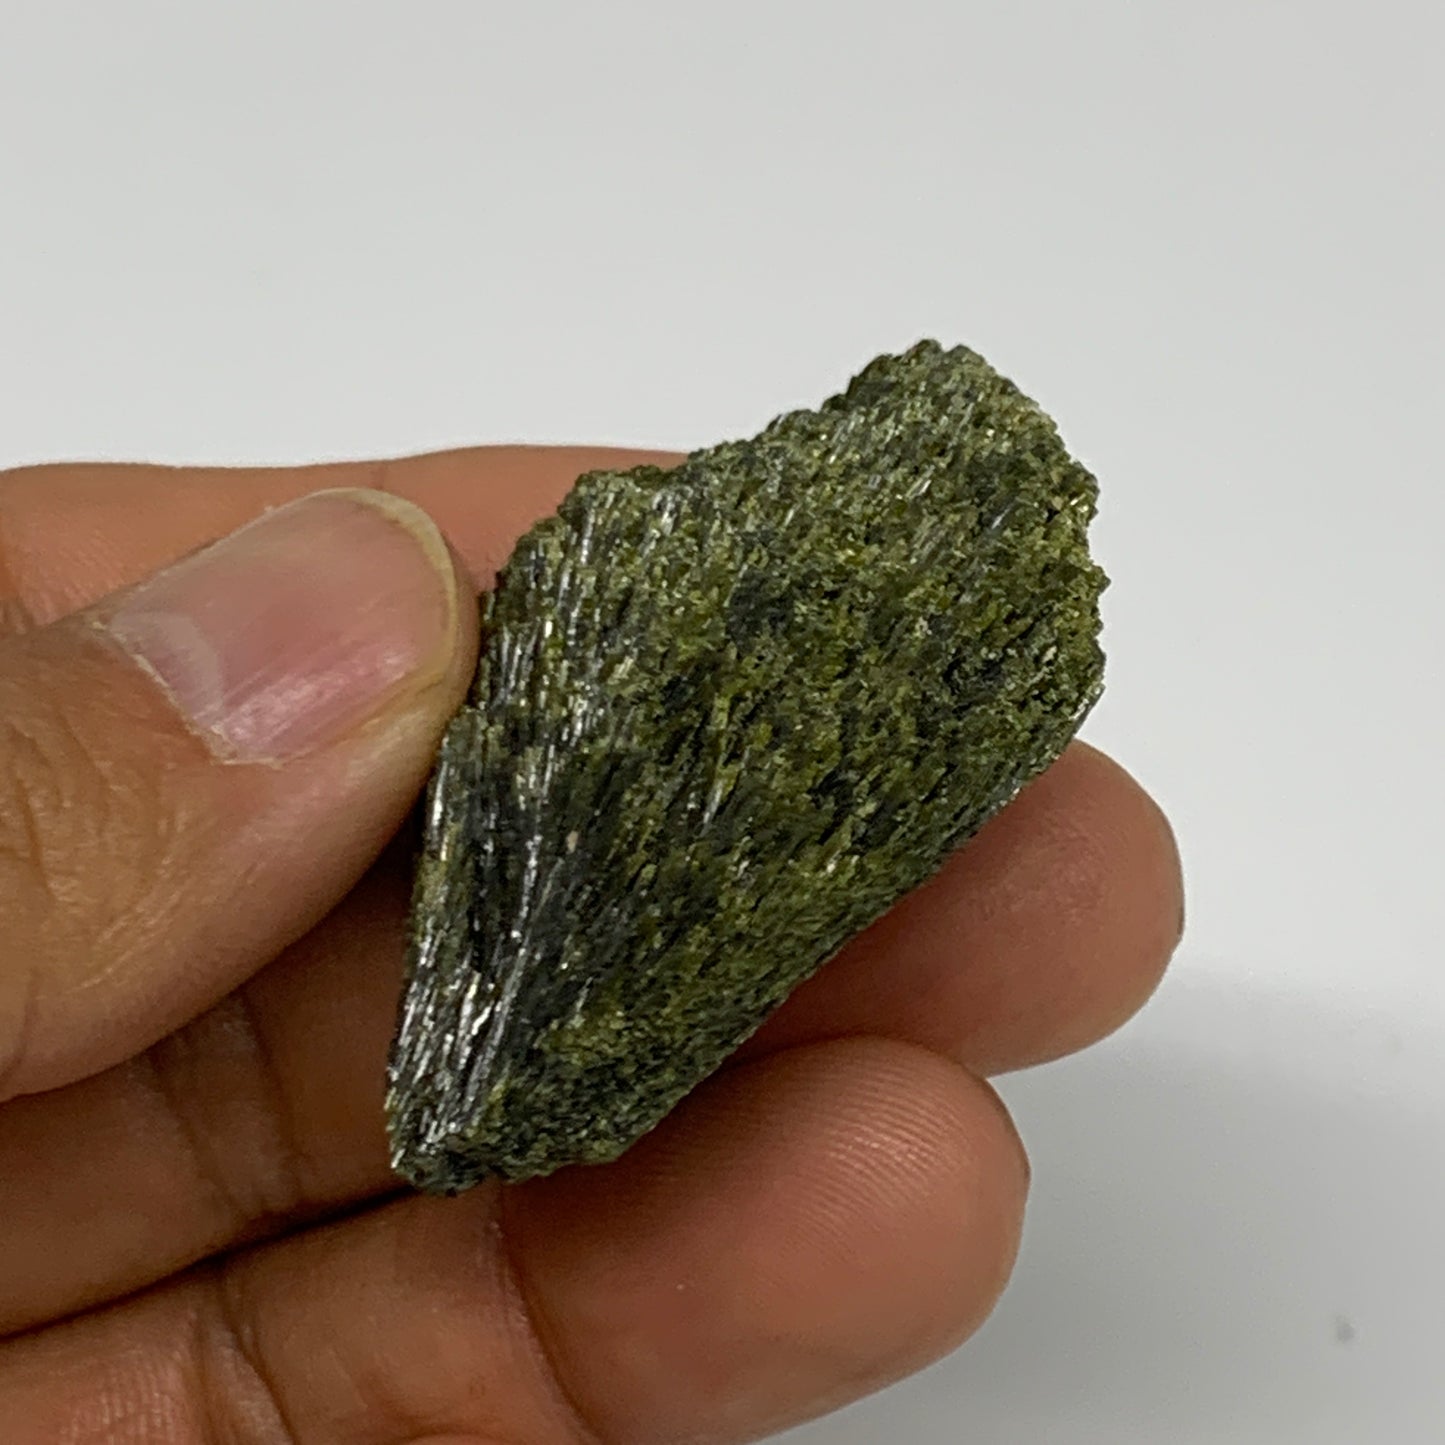 25.1g,1.7"x1.4"x0.5",Green Epidote Custer/Leaf Mineral Specimen @Pakistan,B27582